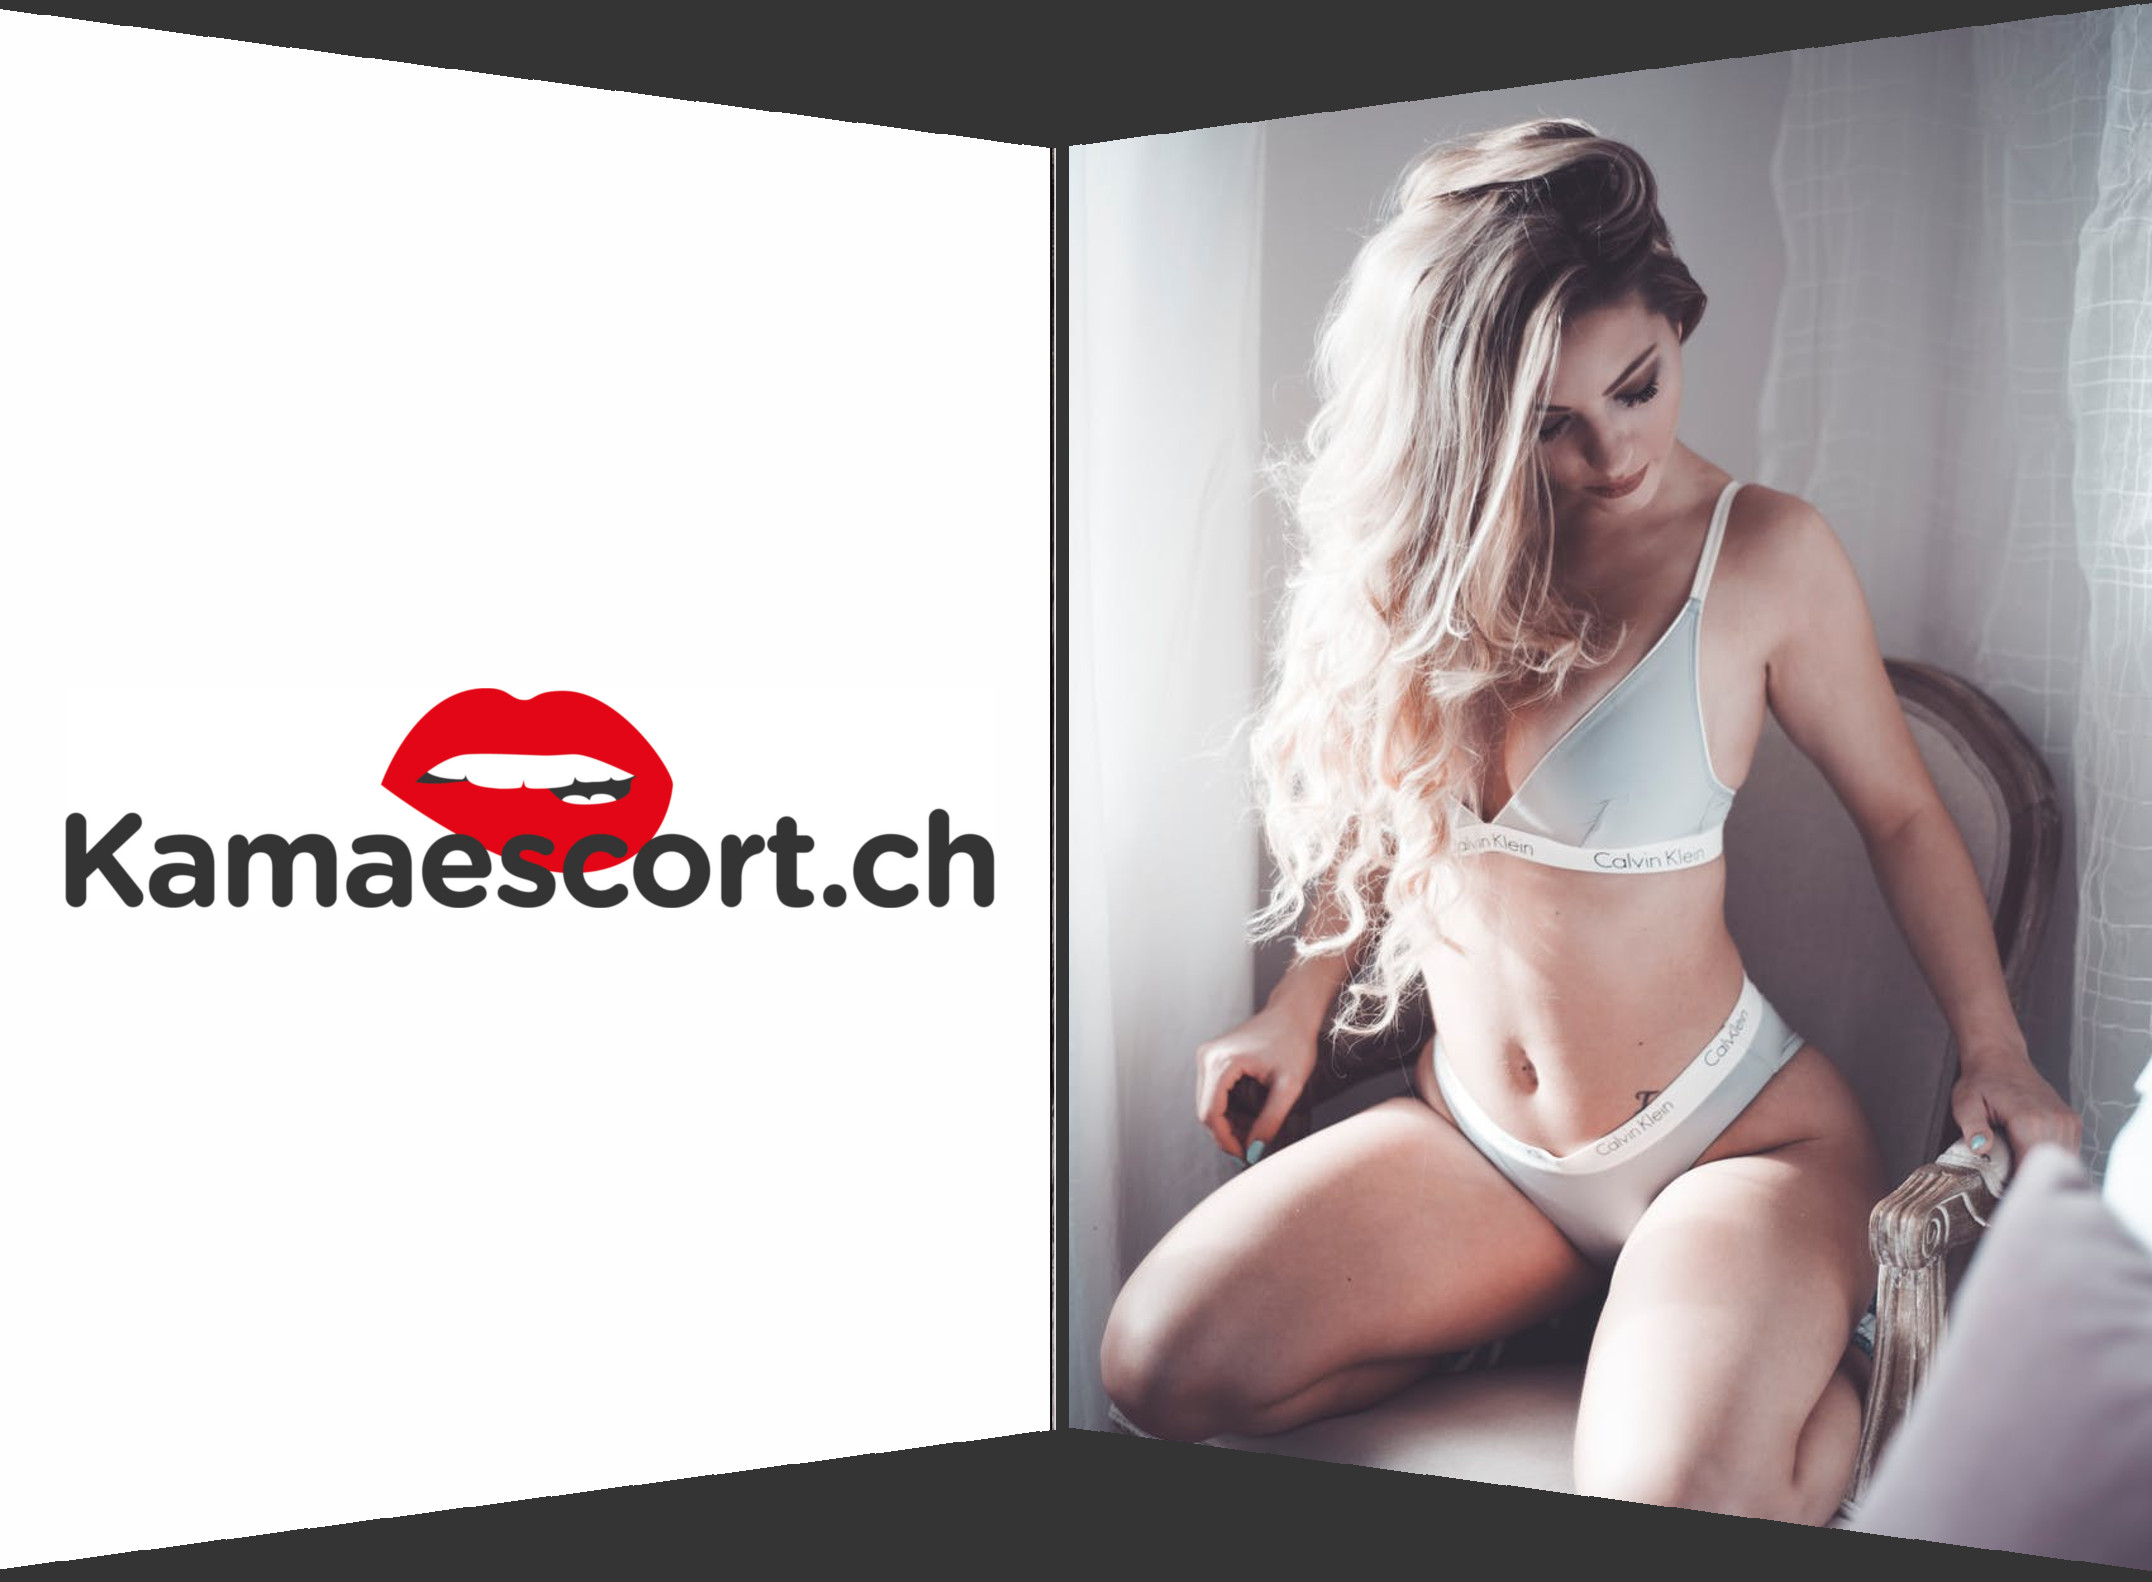 Escort girl législation suisse, services de masseuse bien-être